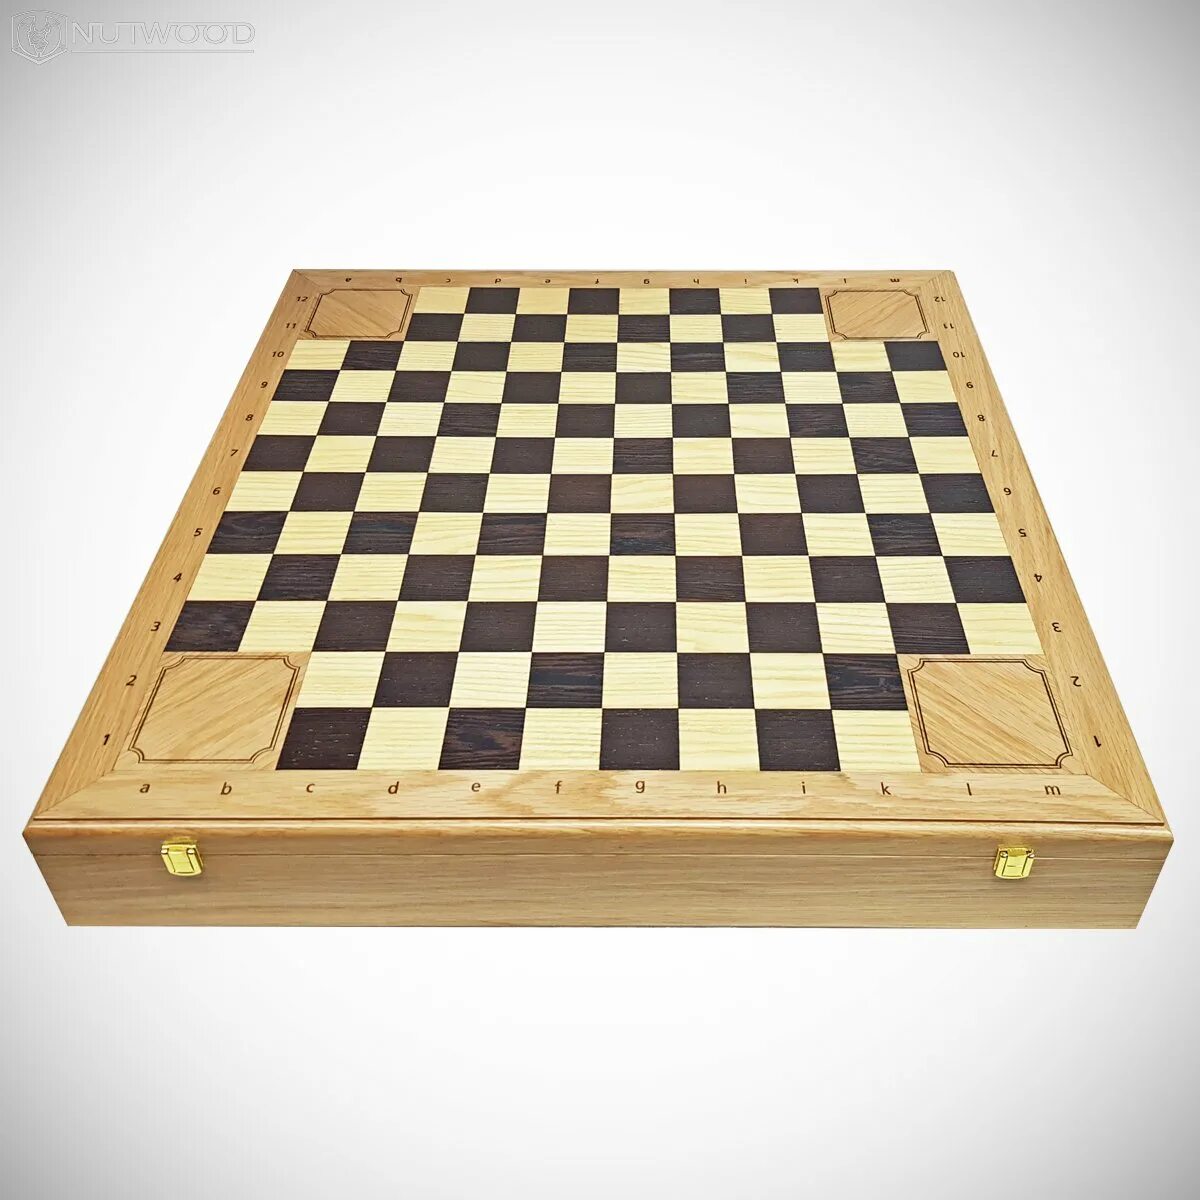 Варианты шахматных игр. Доска Шахматов. Поле Шахматов. Шахматная доска на четверых. Шестиугольная шахматная доска.